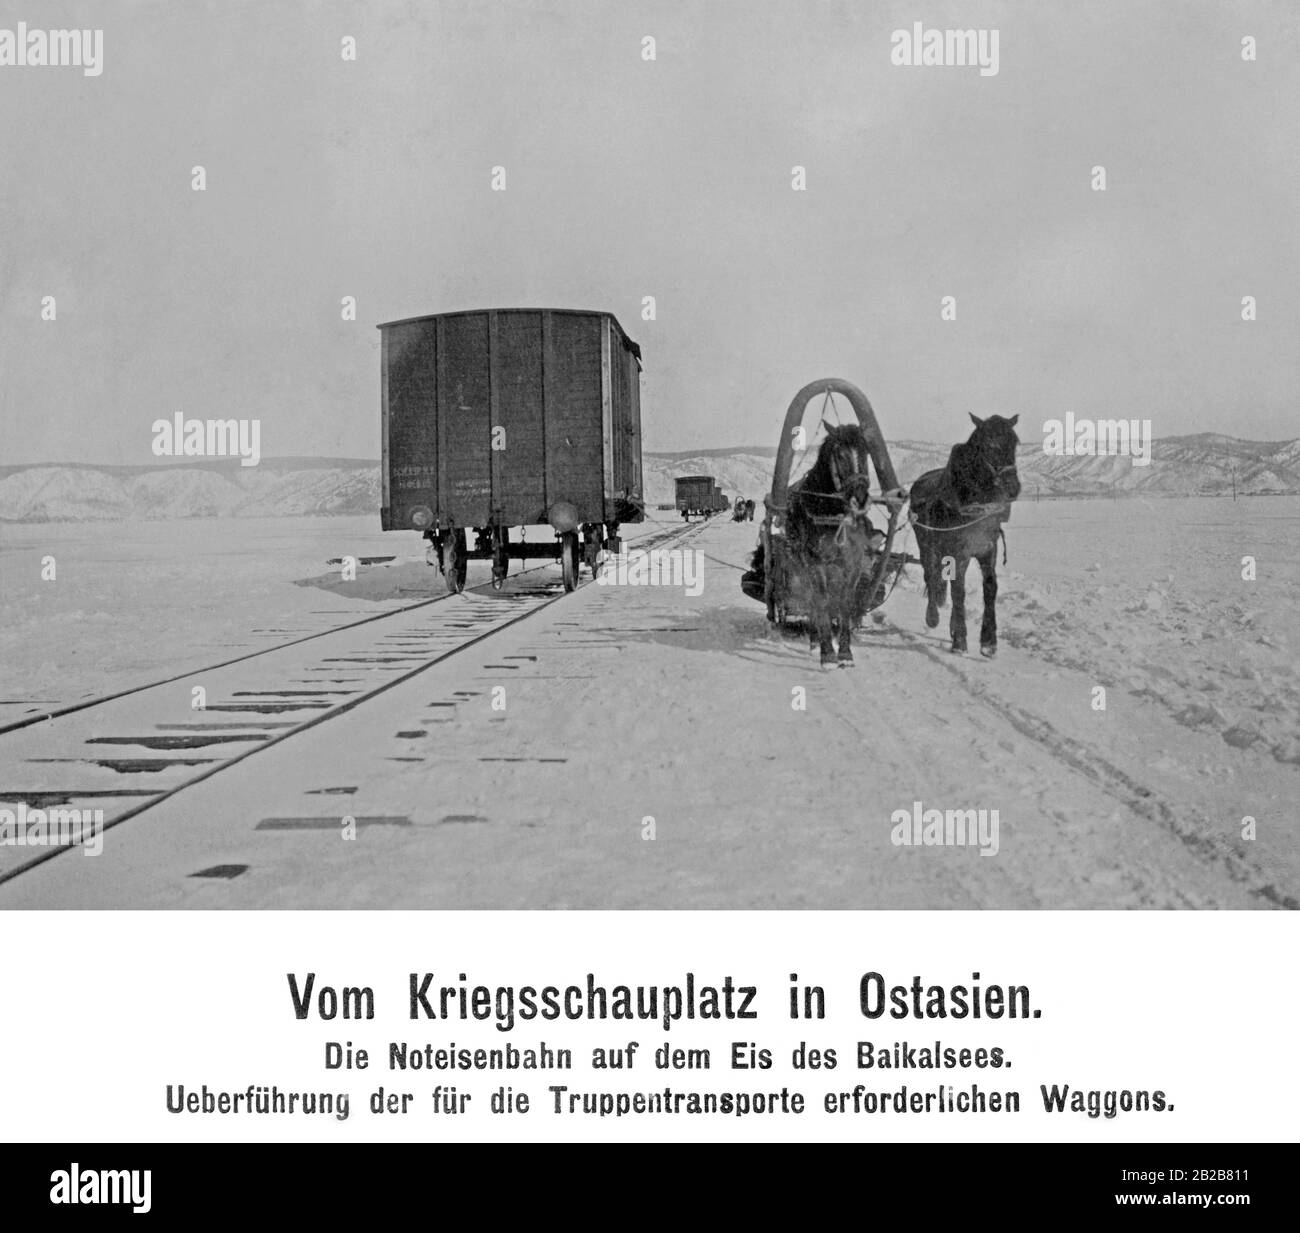 La ferrovia sul ghiaccio del lago Baikal. Vagoni per il trasporto di truppe nella guerra russo-giapponese nell'Asia orientale. Foto Stock